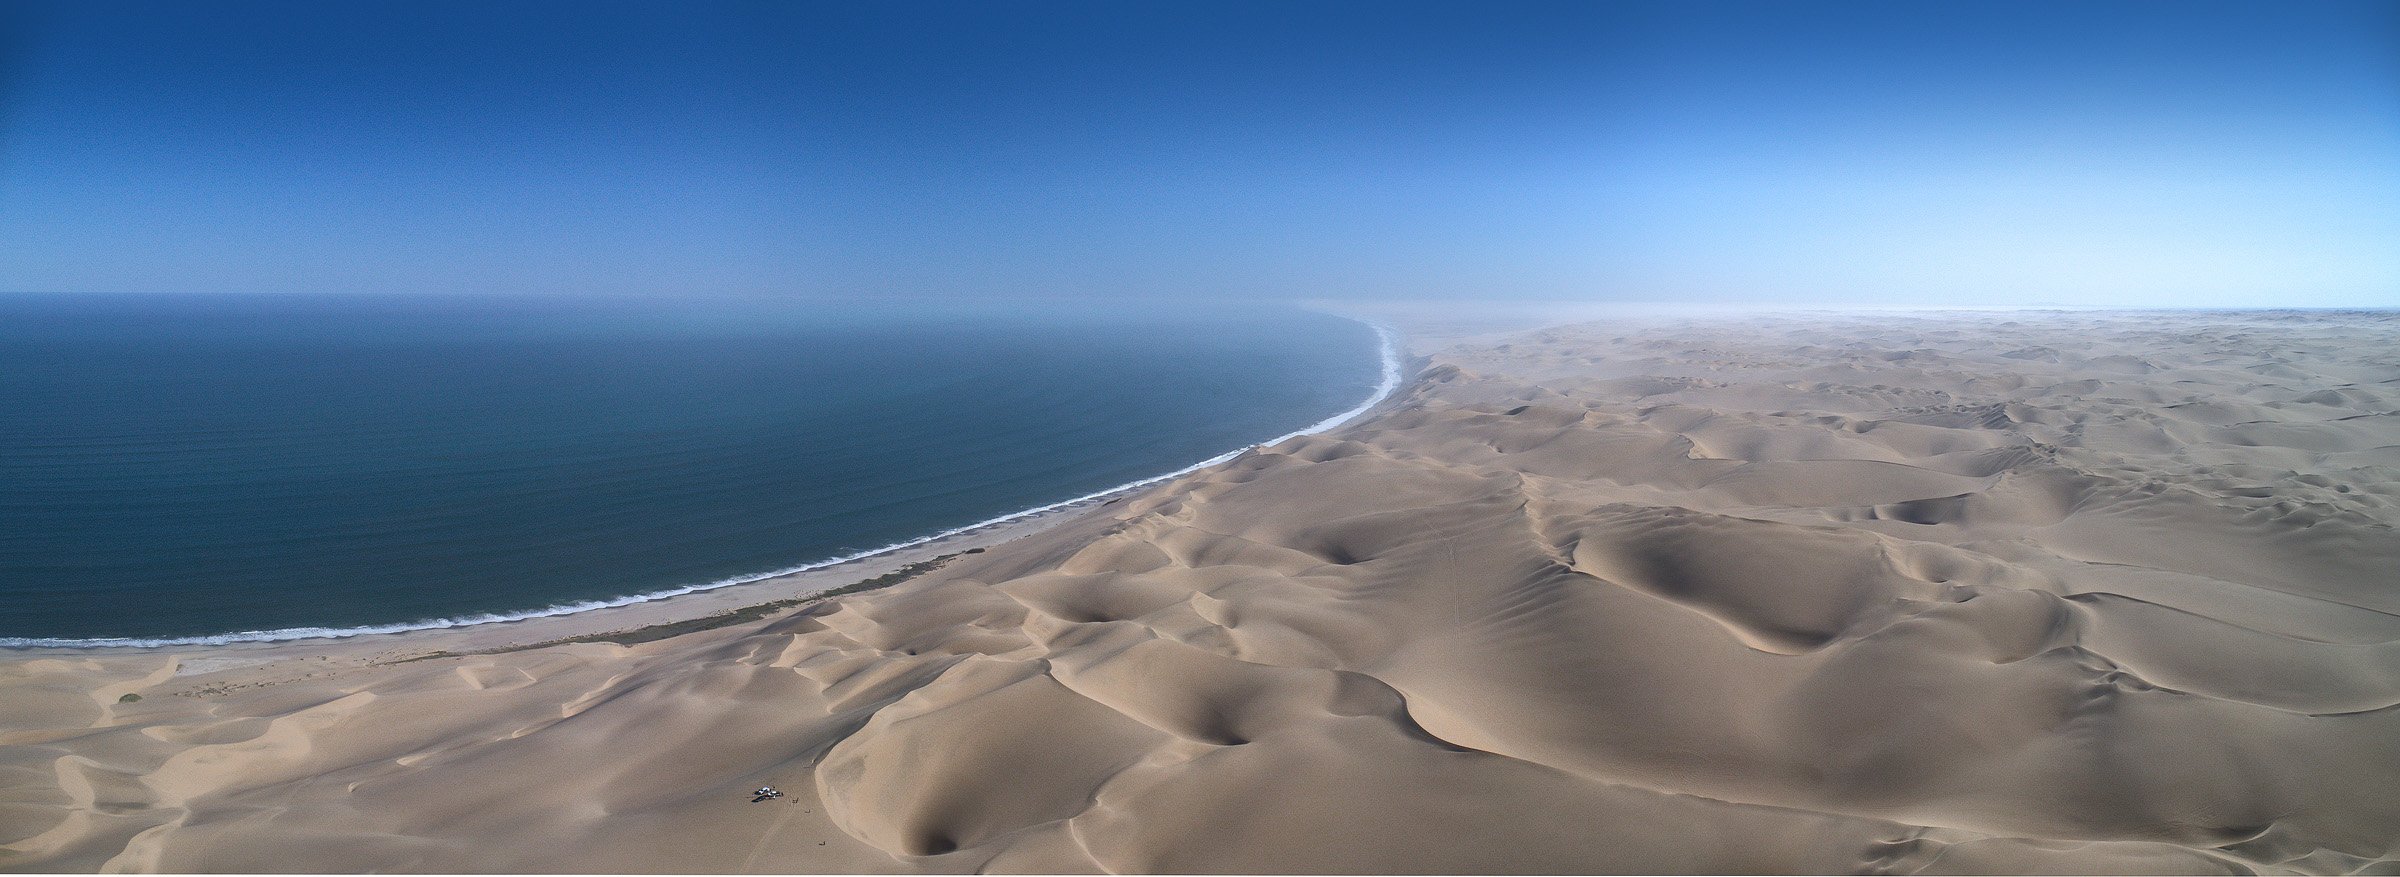 намибия, пустыня, пески, дюны, берег скелетов, анлантика, африка, дрон, панорама, съемка с воздуха, Alex Mimo